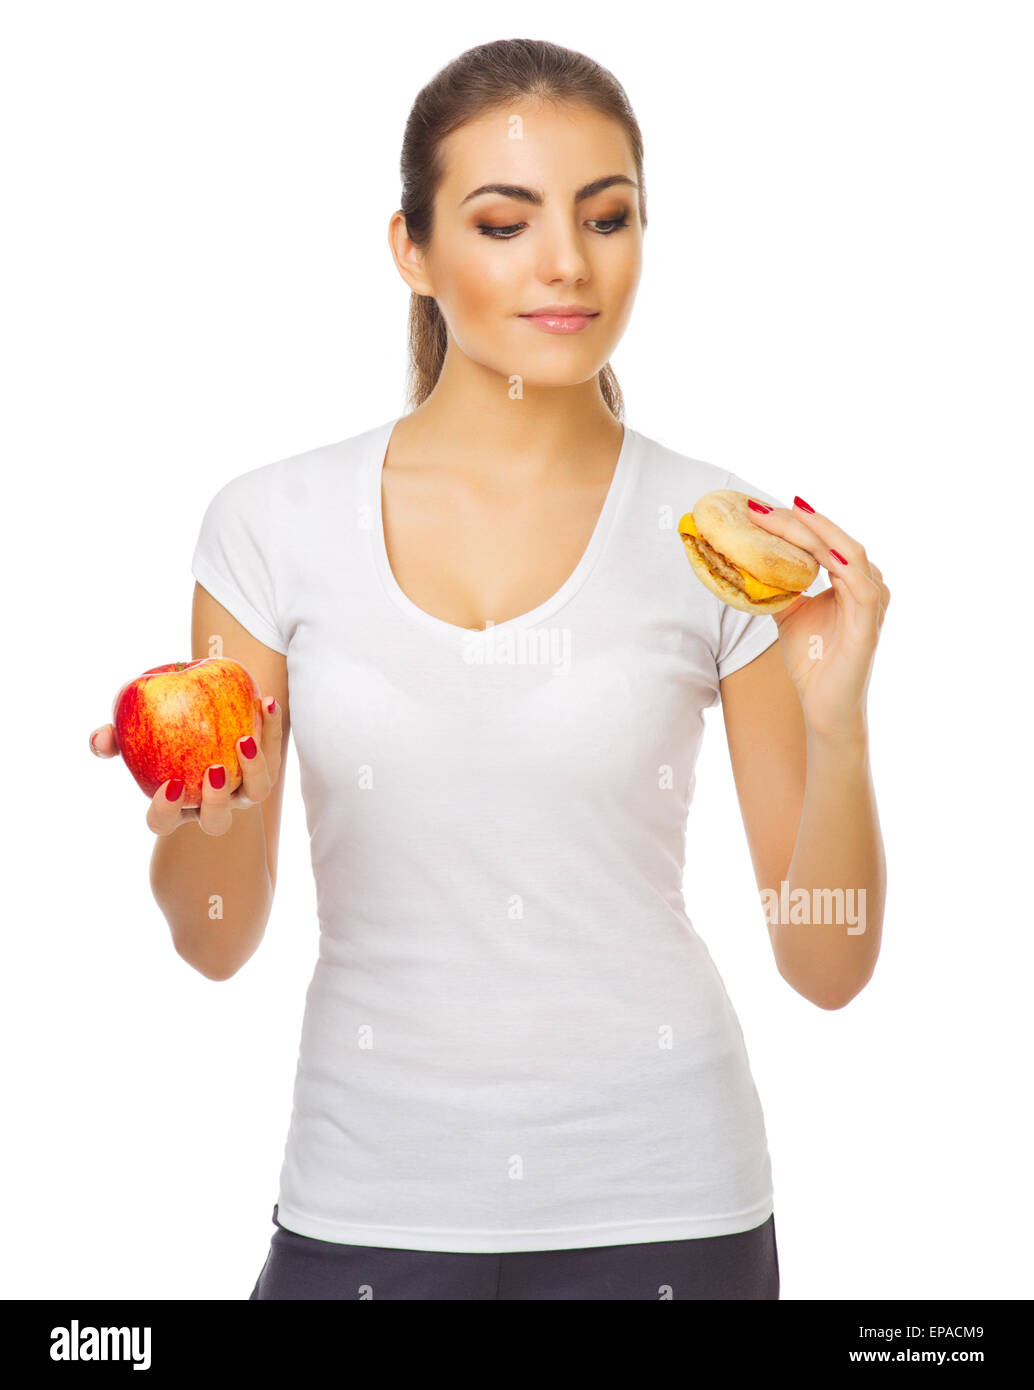 Jeune fille avec apple et isolées du hamburger Banque D'Images